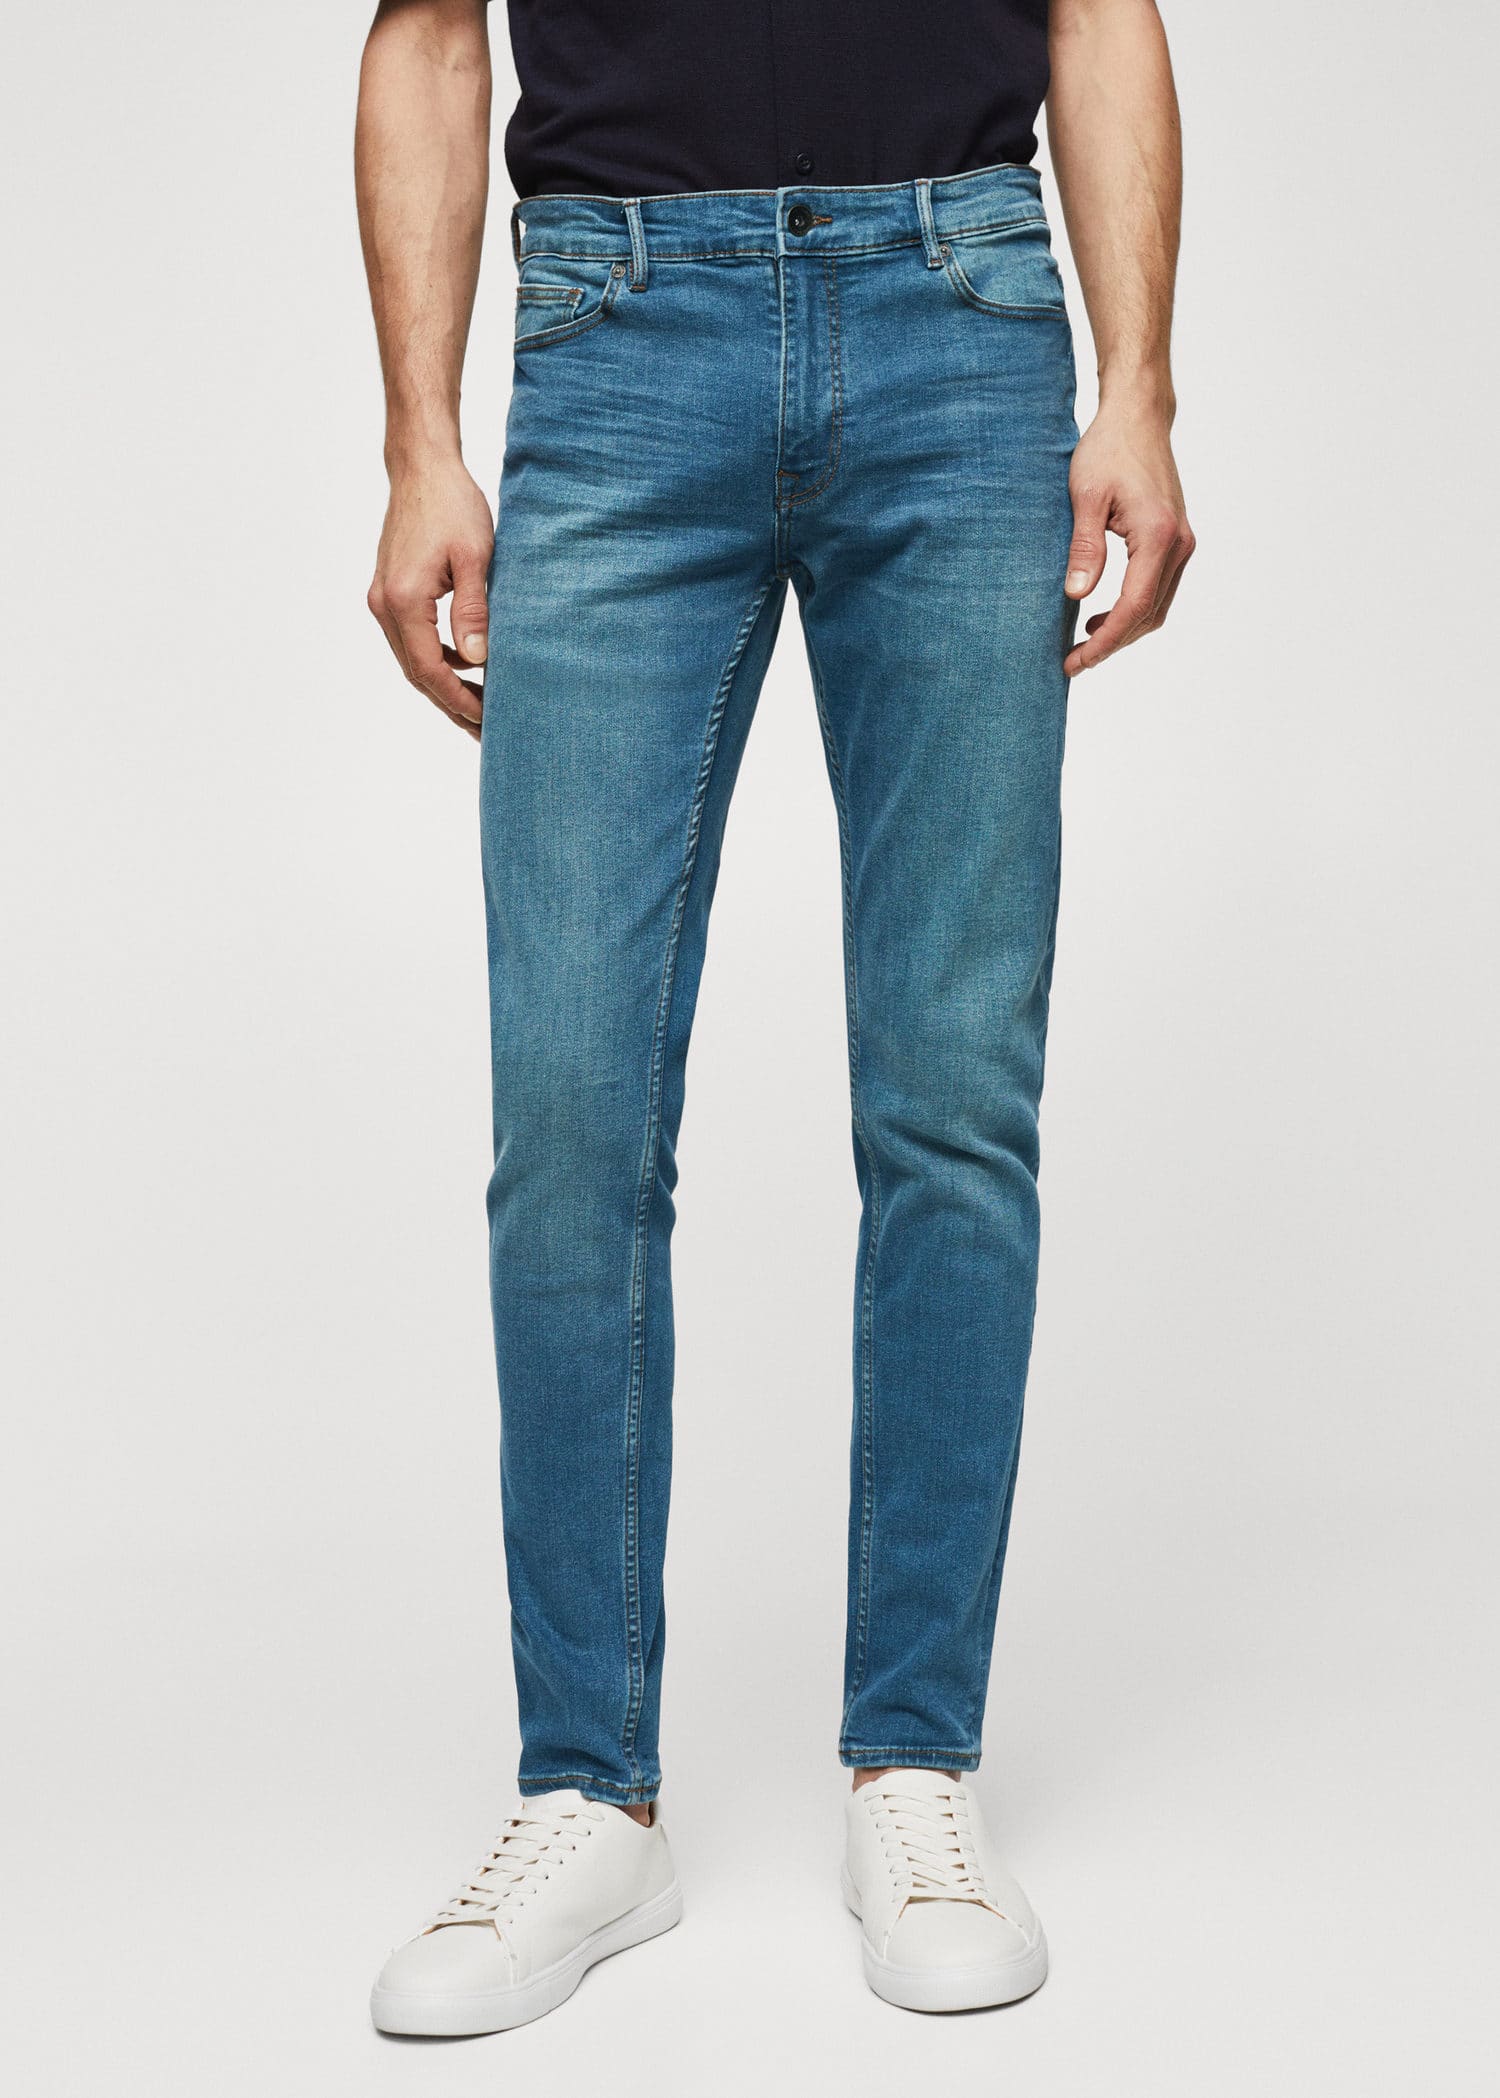 Jude skinny-fit jeans - Náhled ve středové rovině